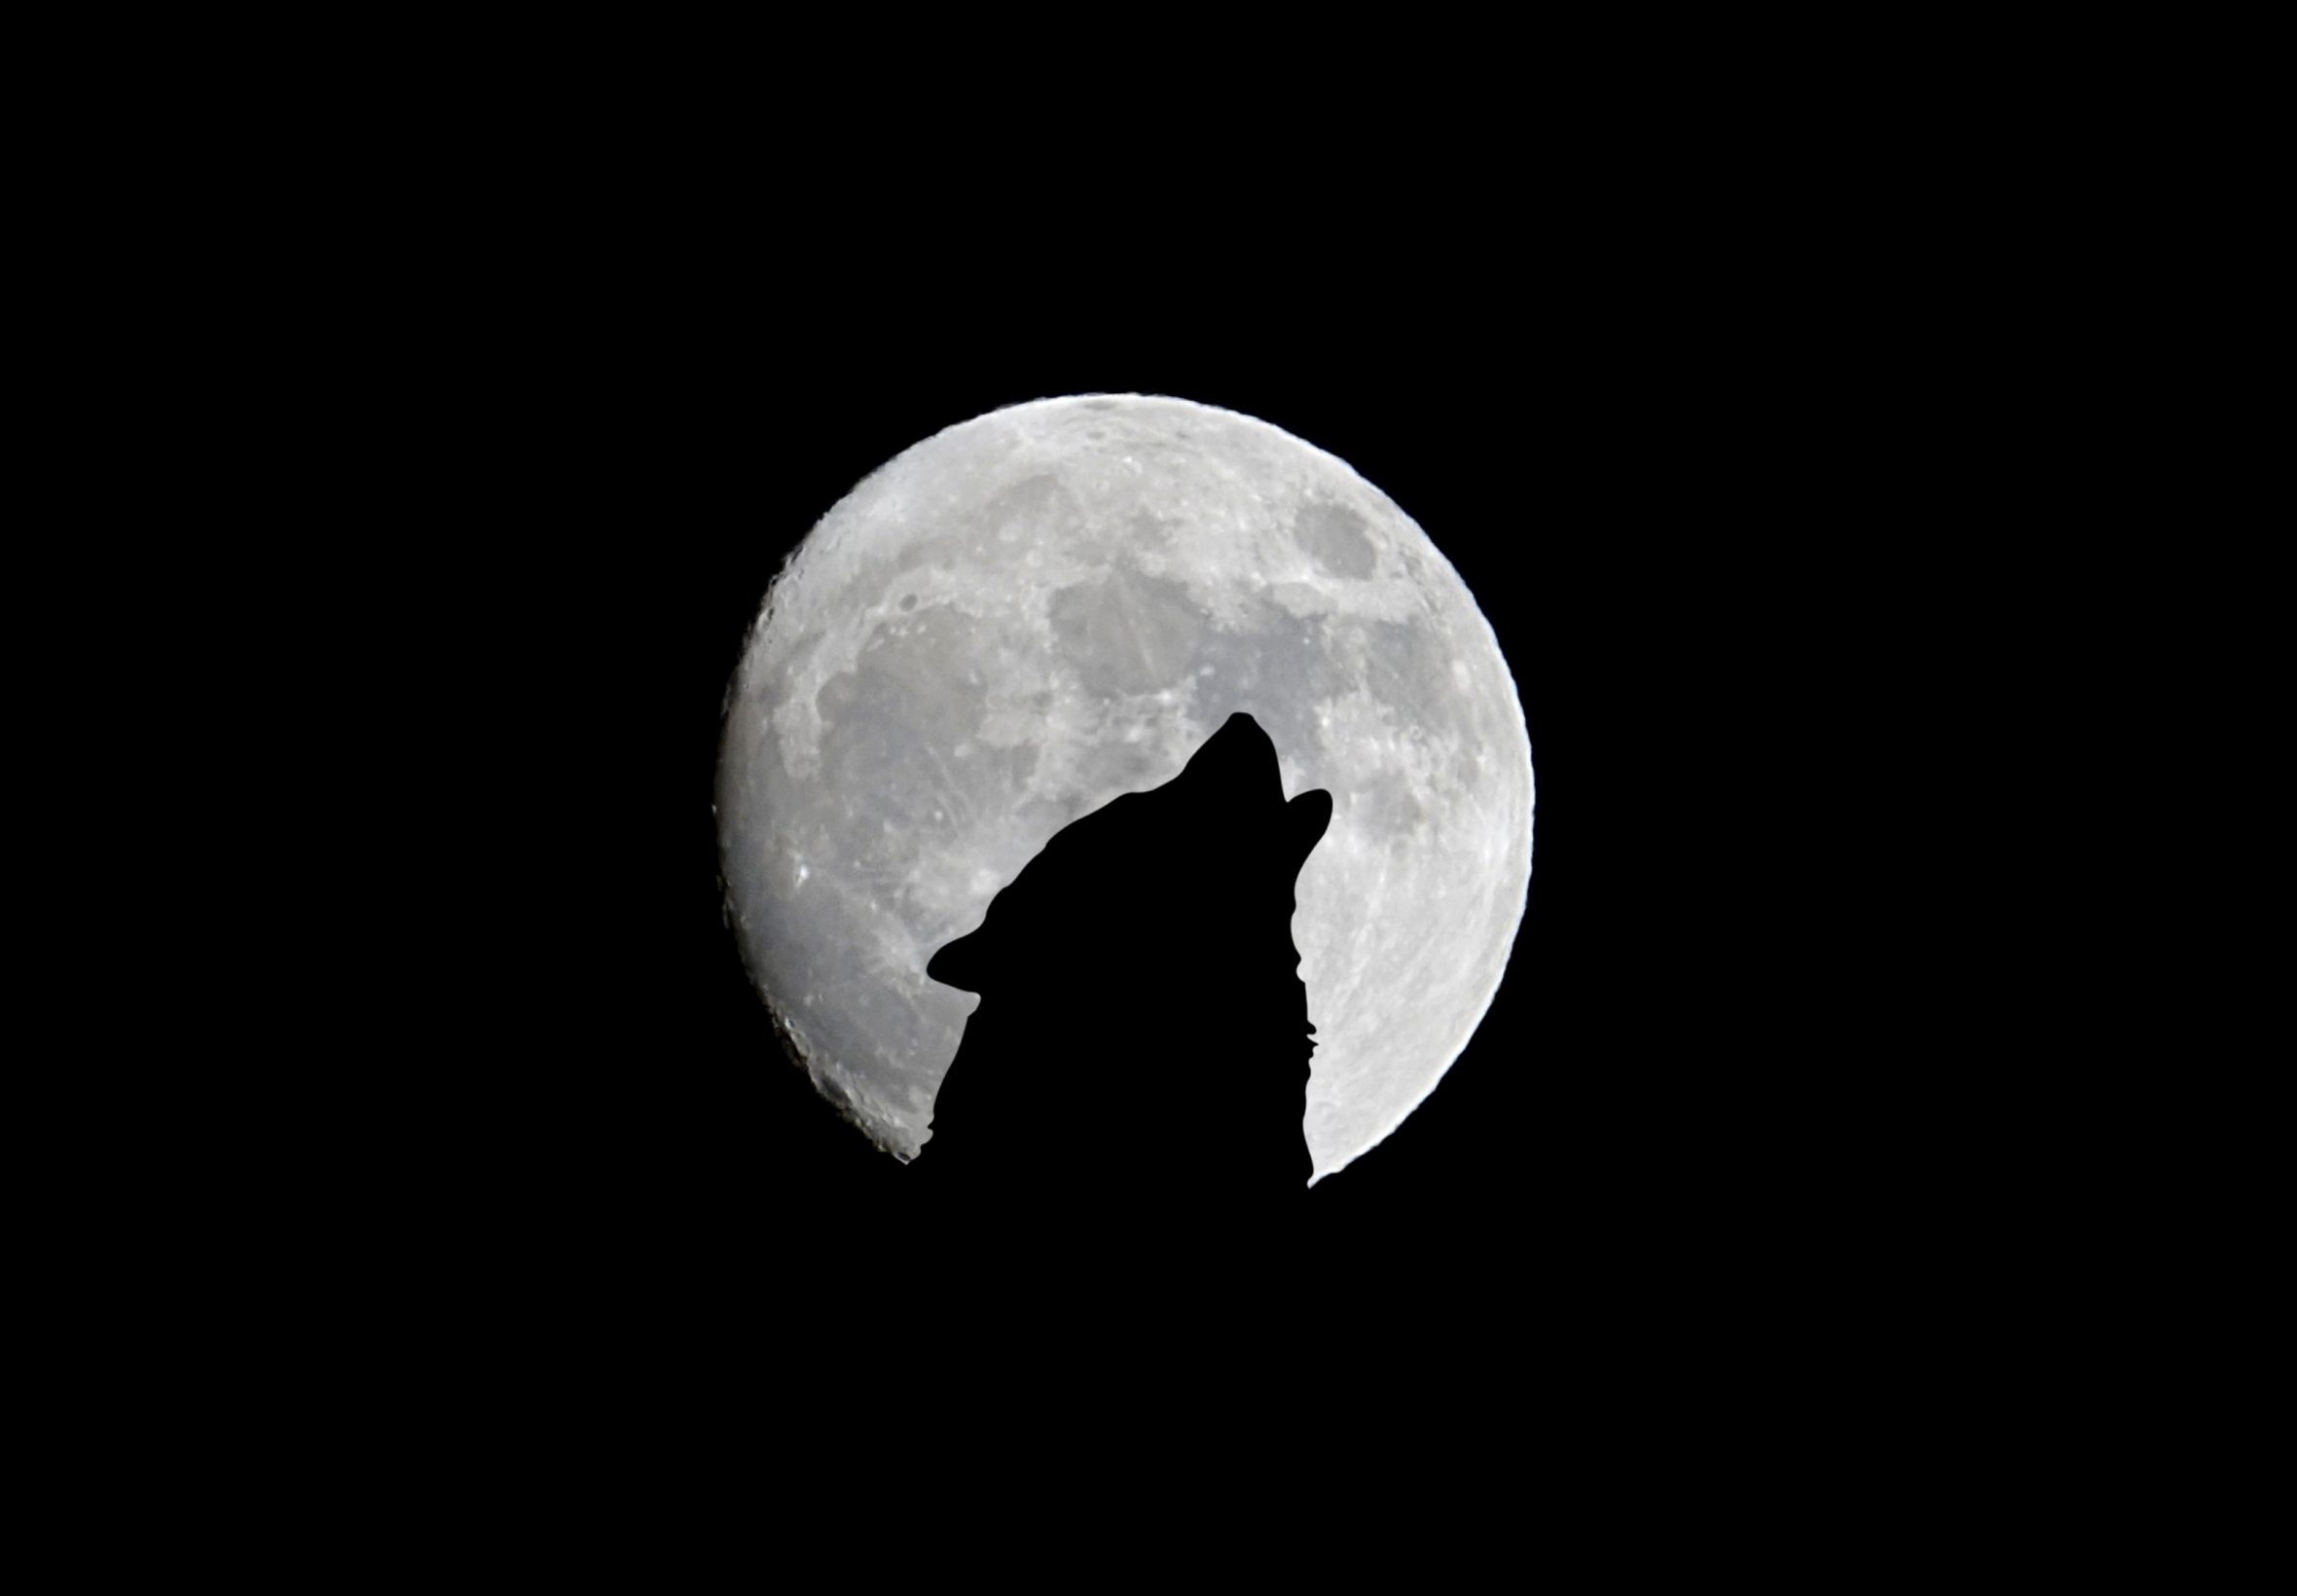 2360x1640 iPad Air wallpaper 4k Silhouette of Wolf Full Moon Night Darkness iPad Wallpaper 2360x1640 pixels resolution